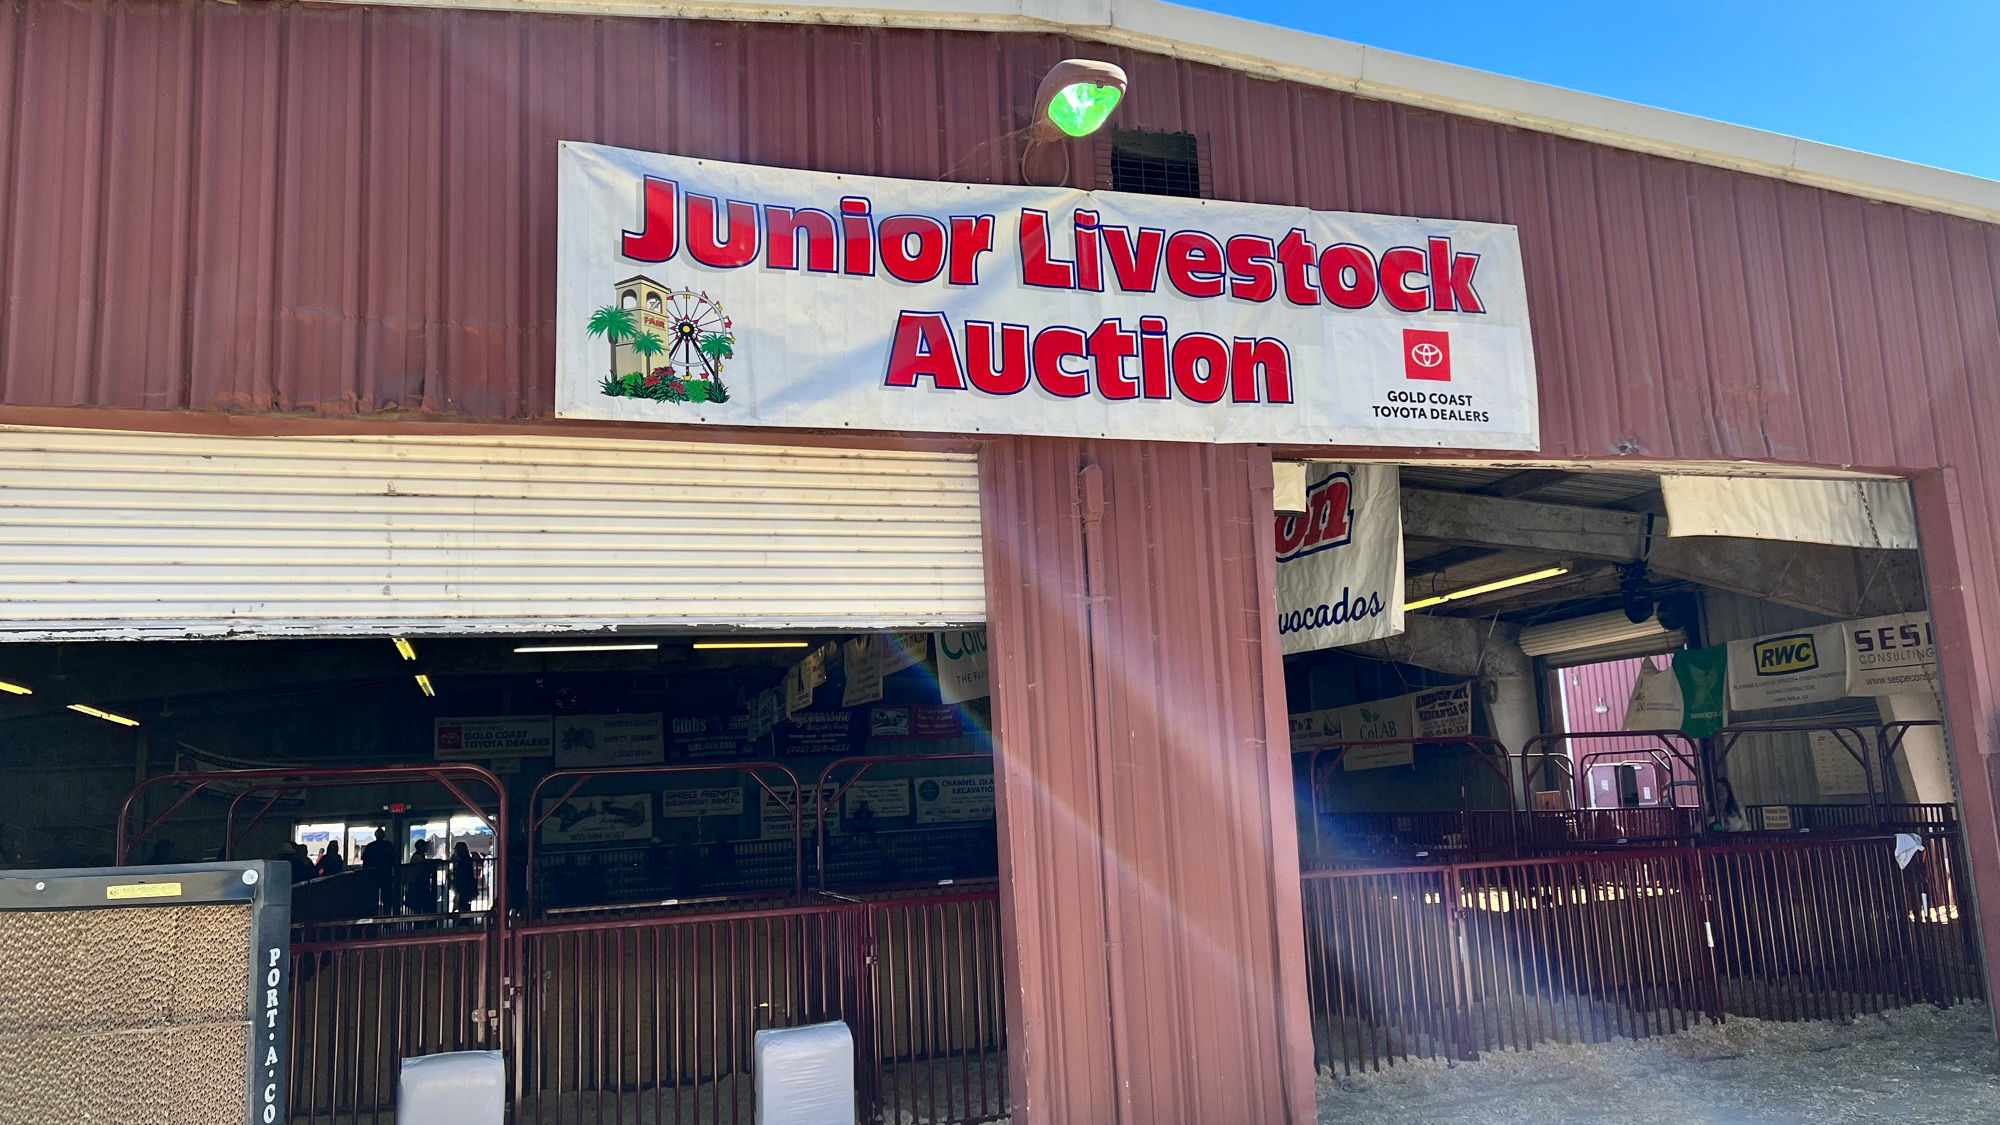 Junior Livestock Auction